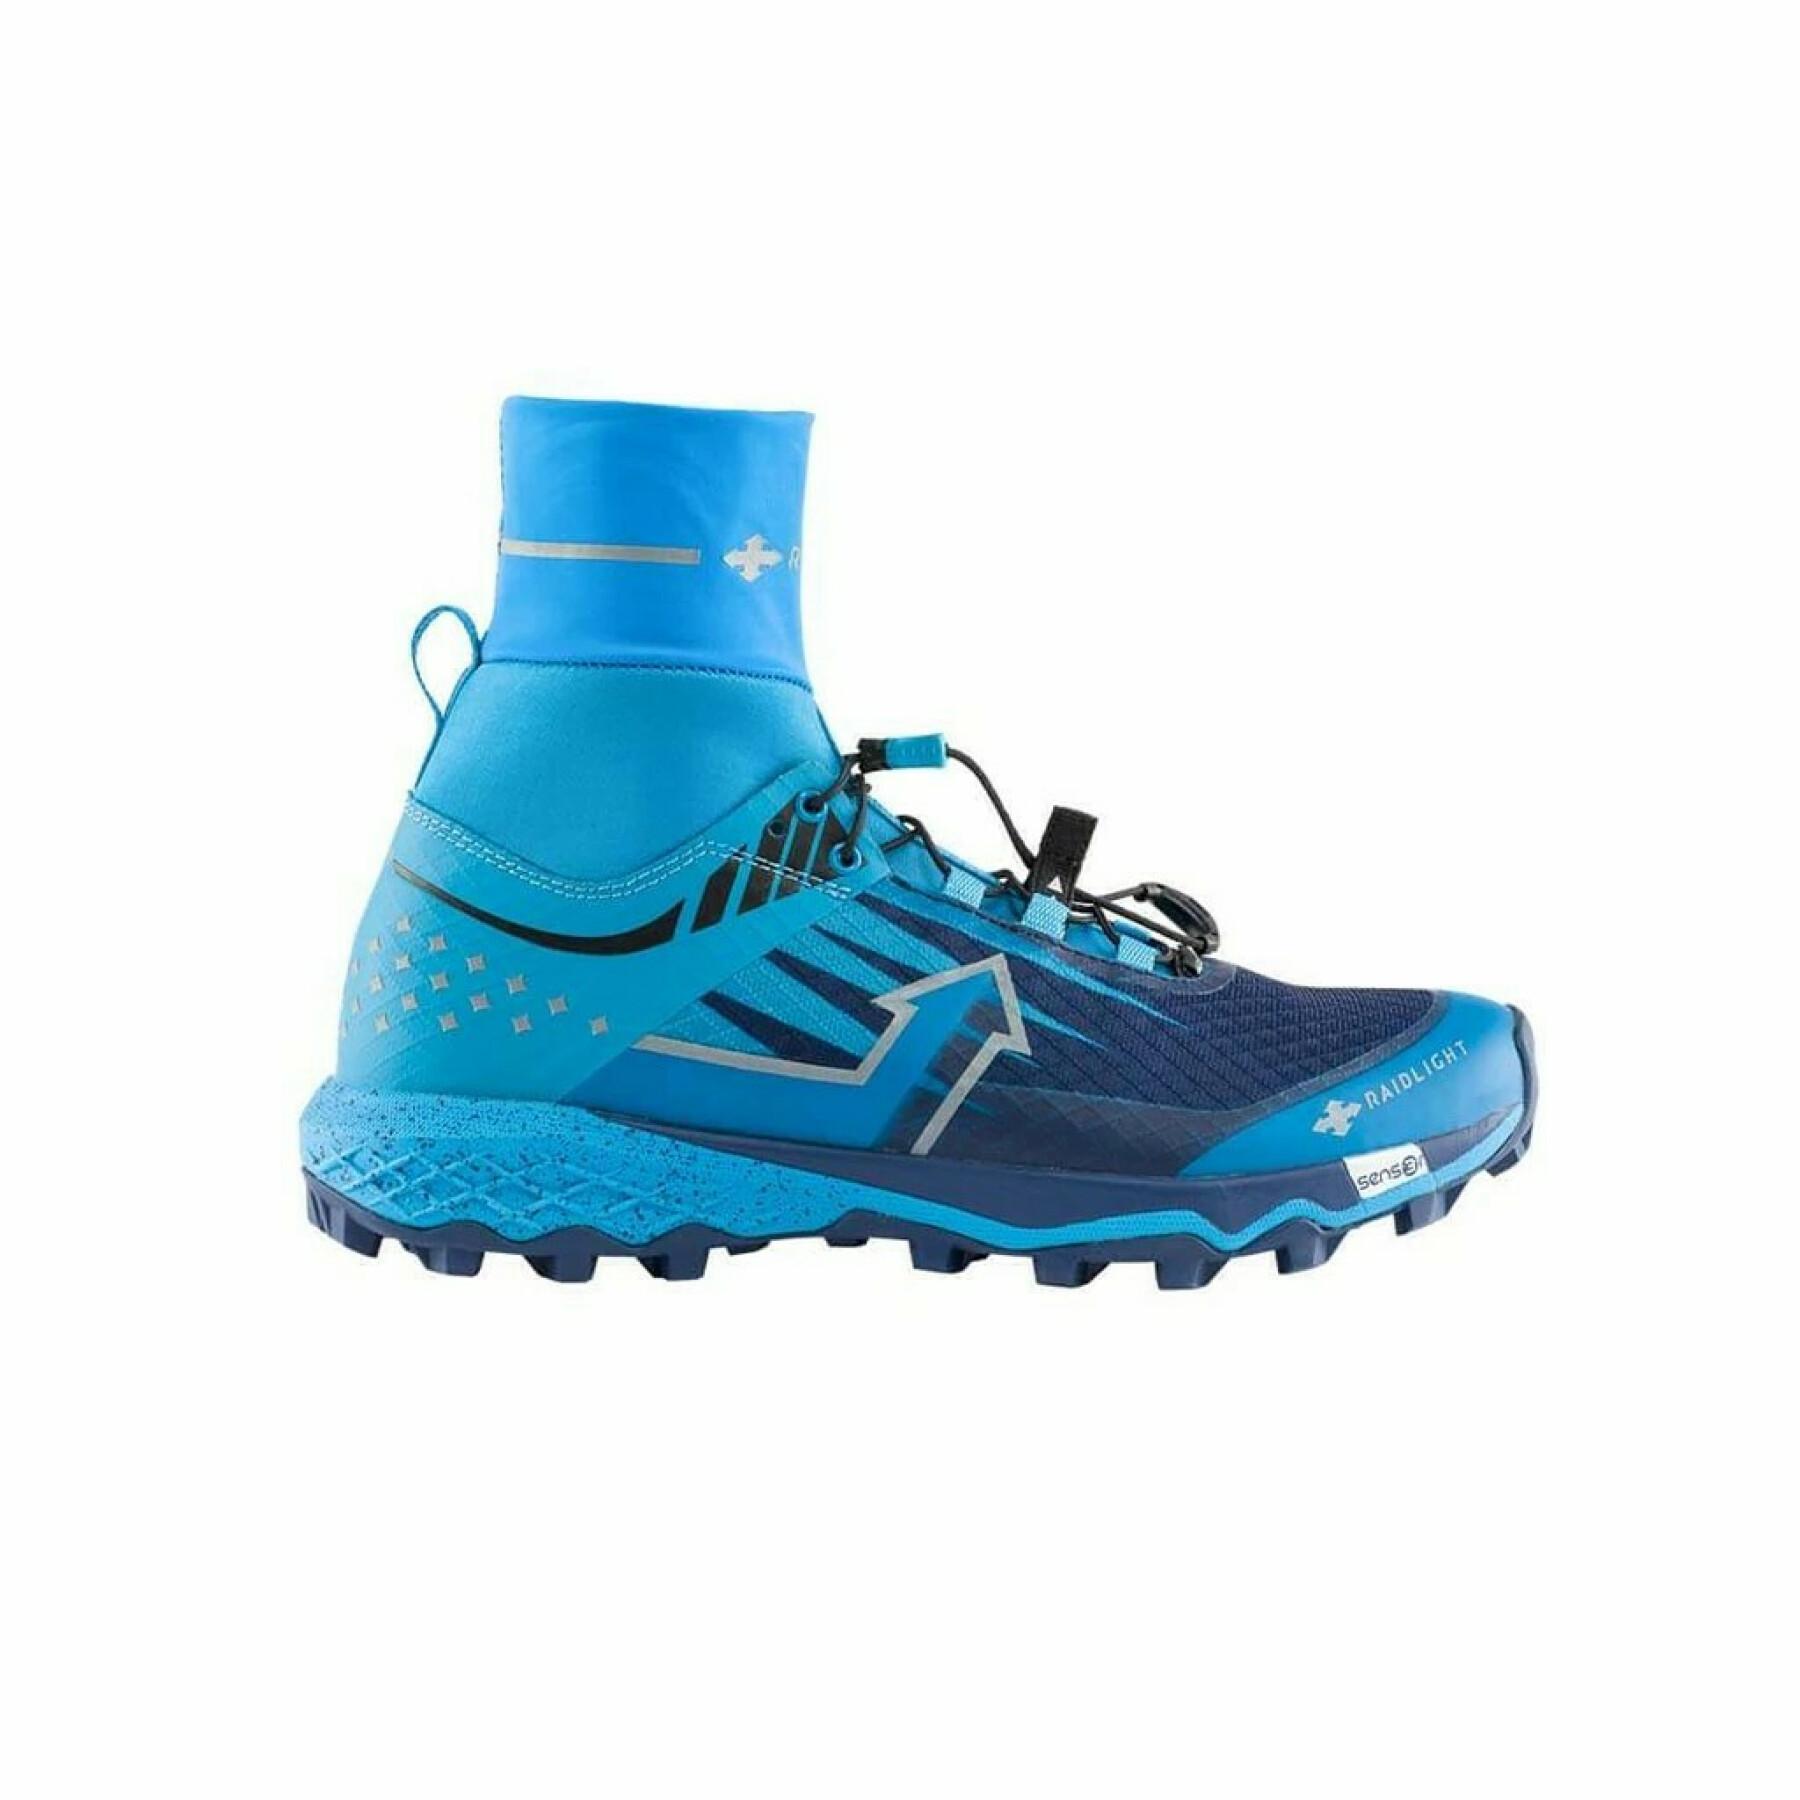 Trail schoenen RaidLight Revolutiv Protect